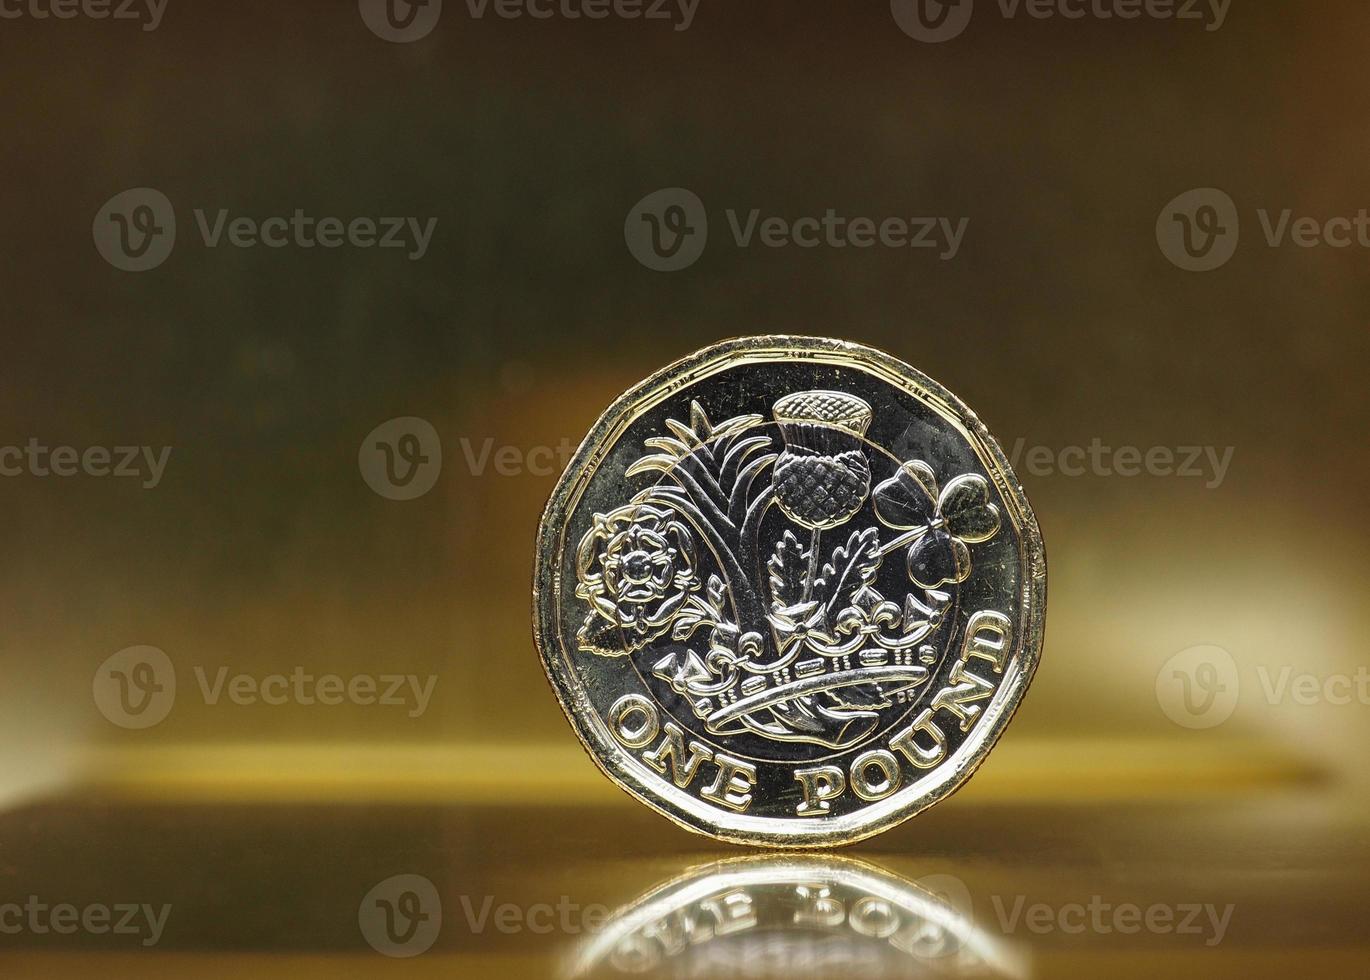 1-Pfund-Münze, Großbritannien über Gold foto